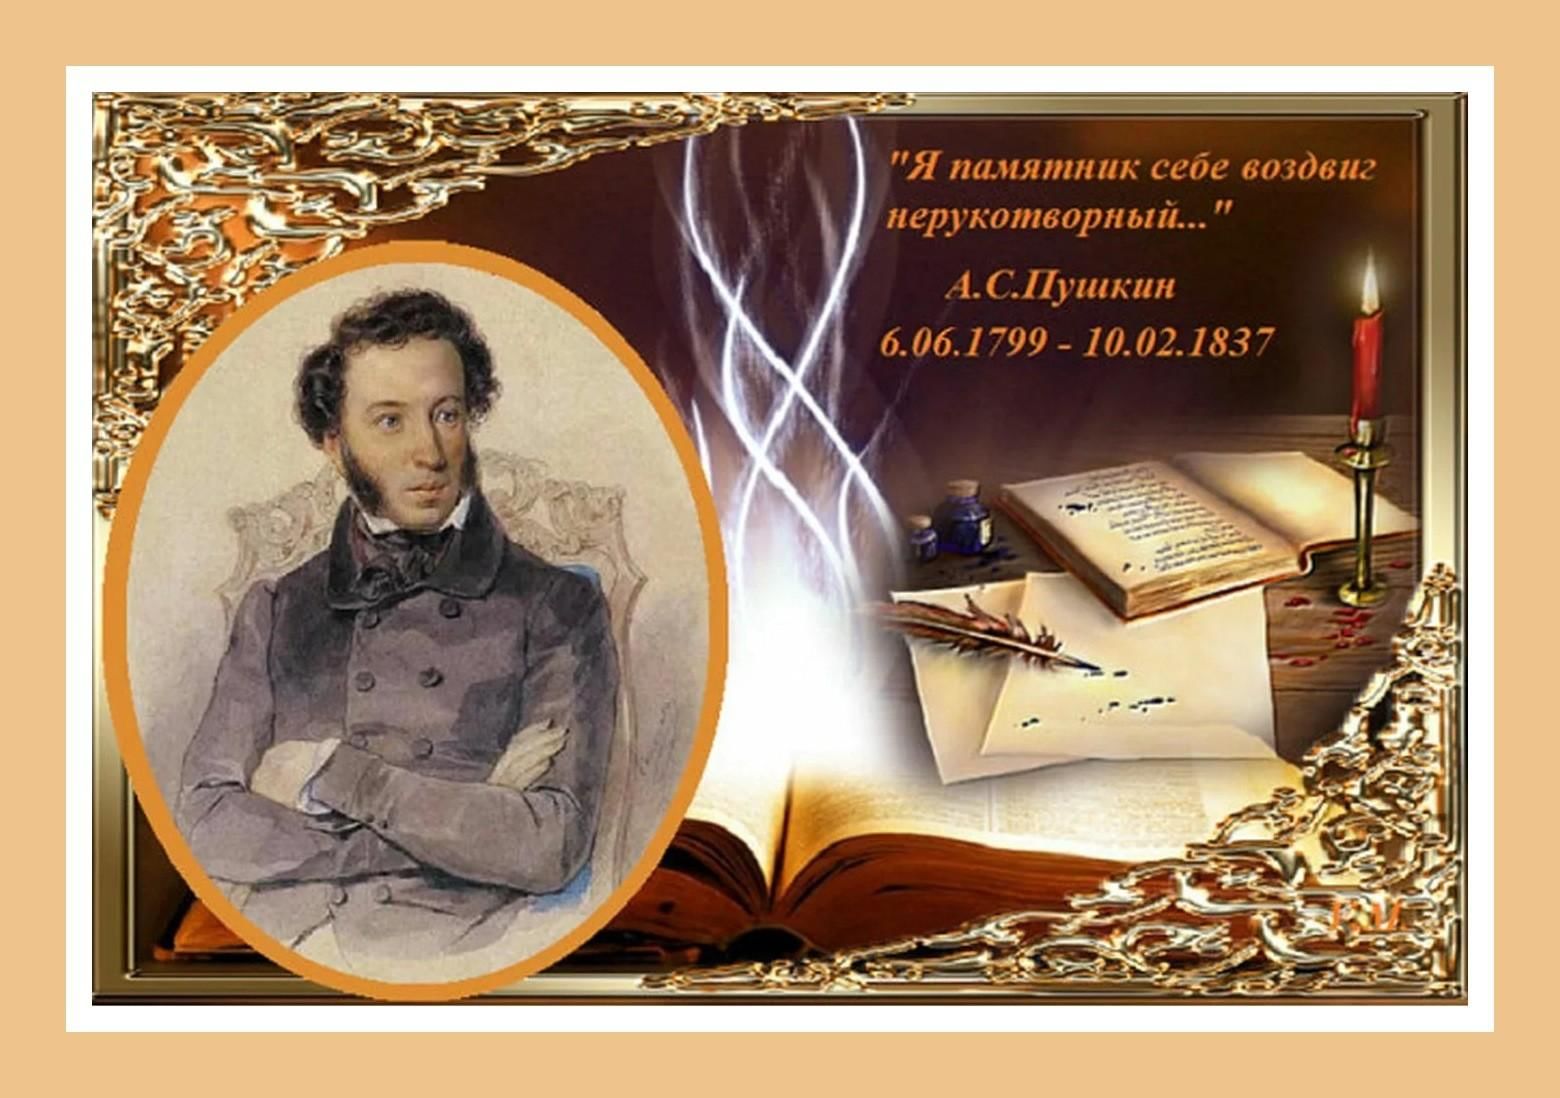 Год памяти пушкина. День памяти а.с. Пушкина (1799-1837).